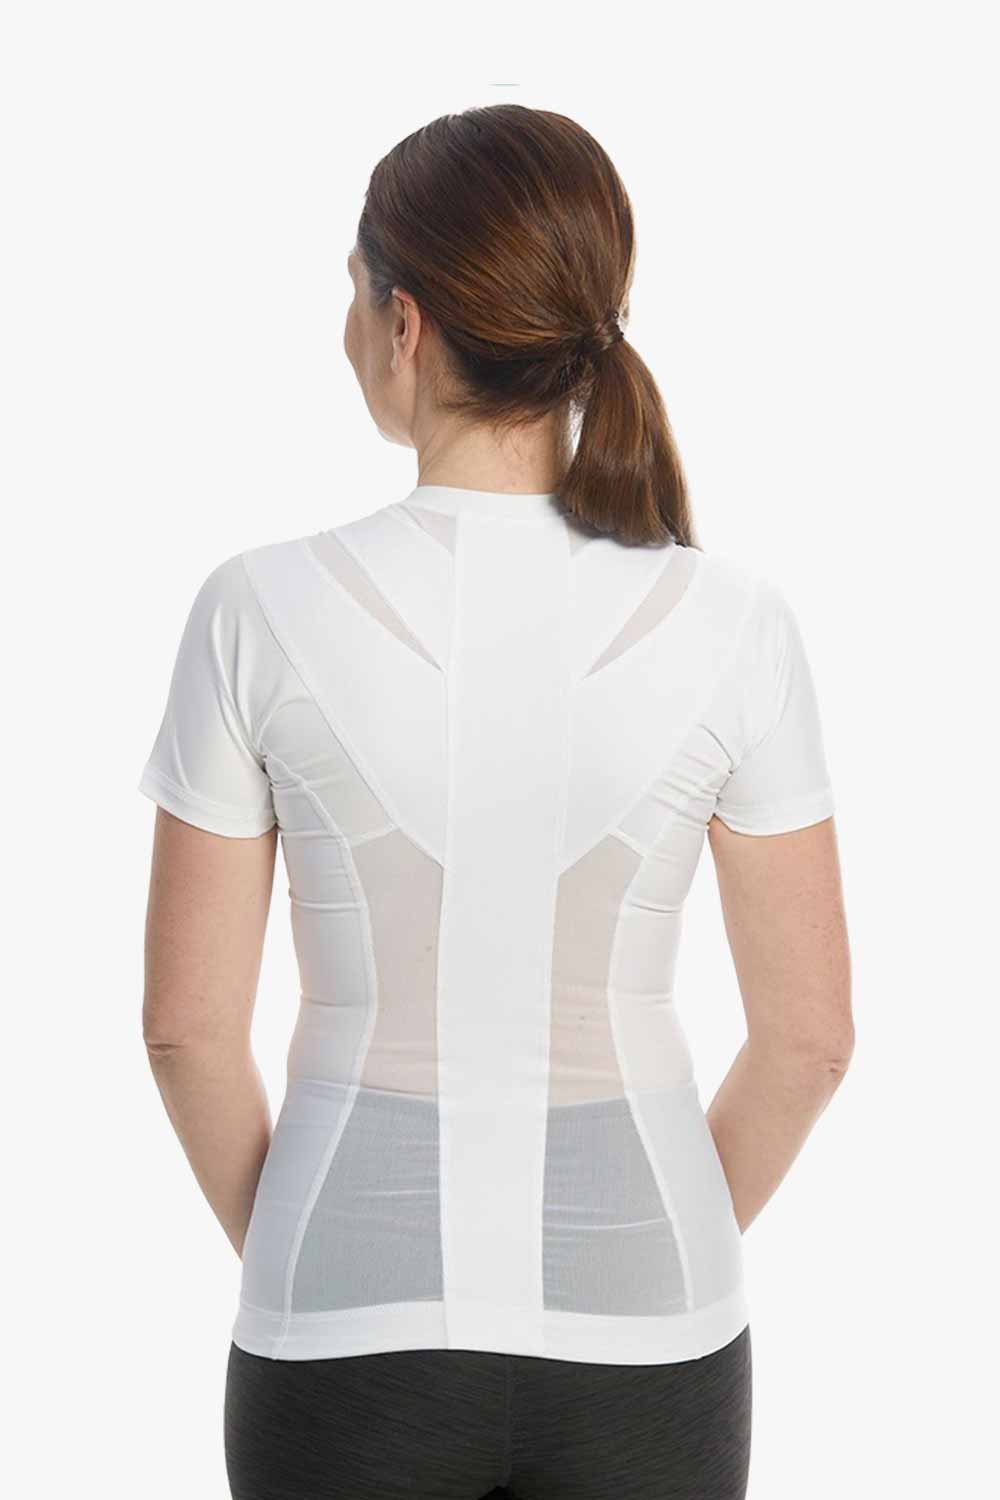 Women's Posture Shirt™ Zipper - Hvit